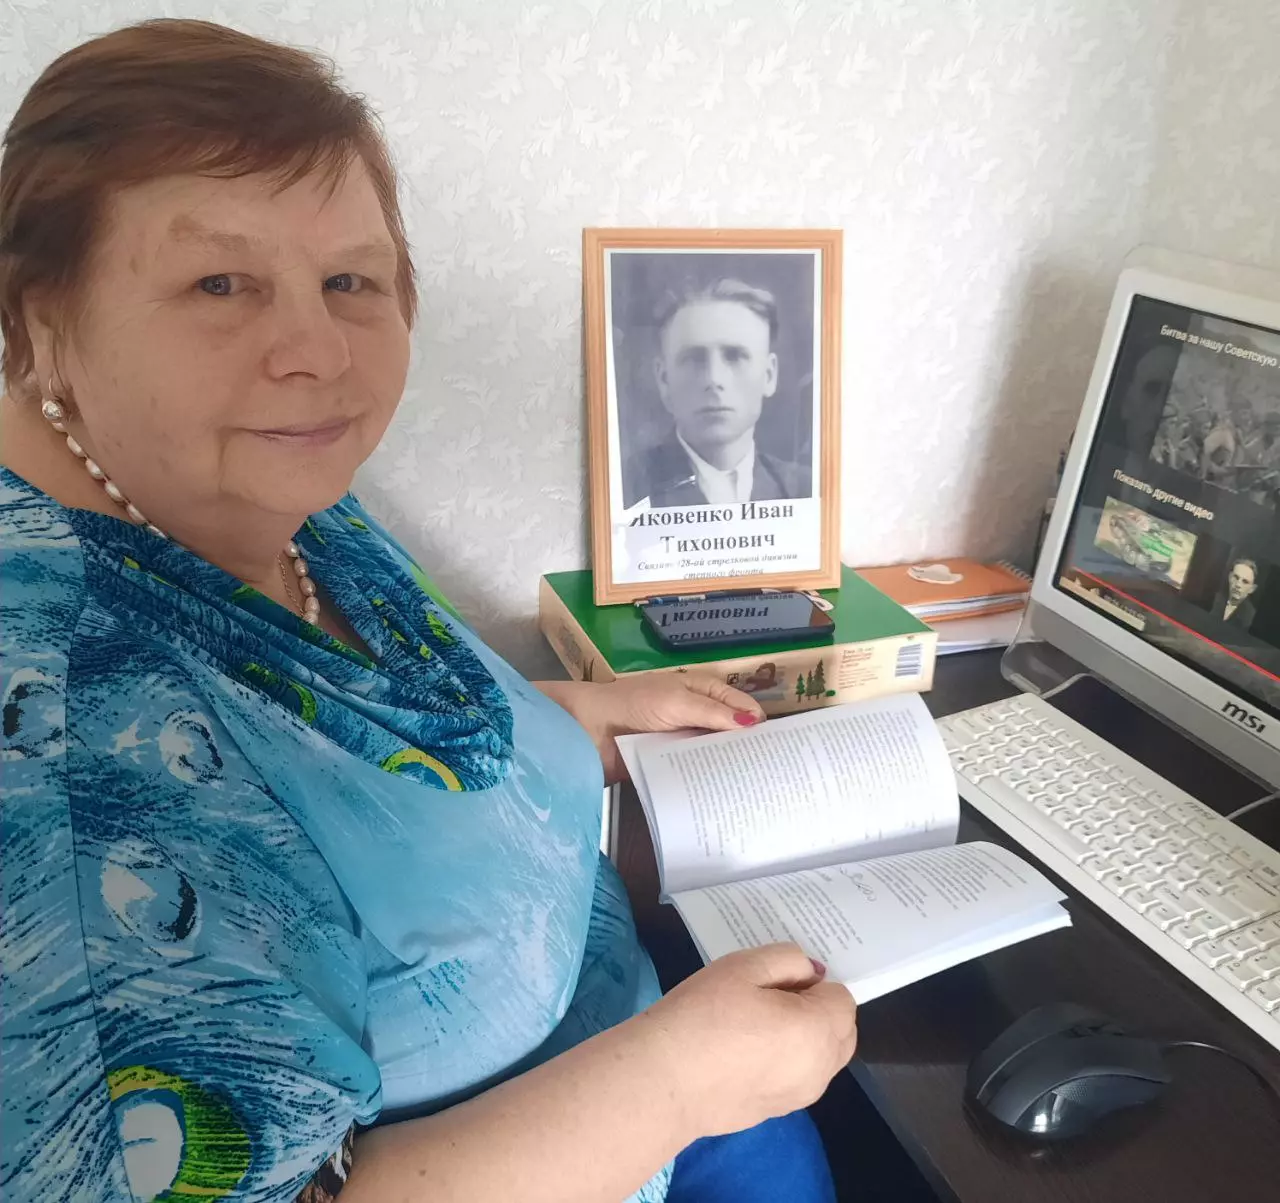 Надежда Яковенко услышала голос своего отца-солдата спустя 60 лет после его смерти